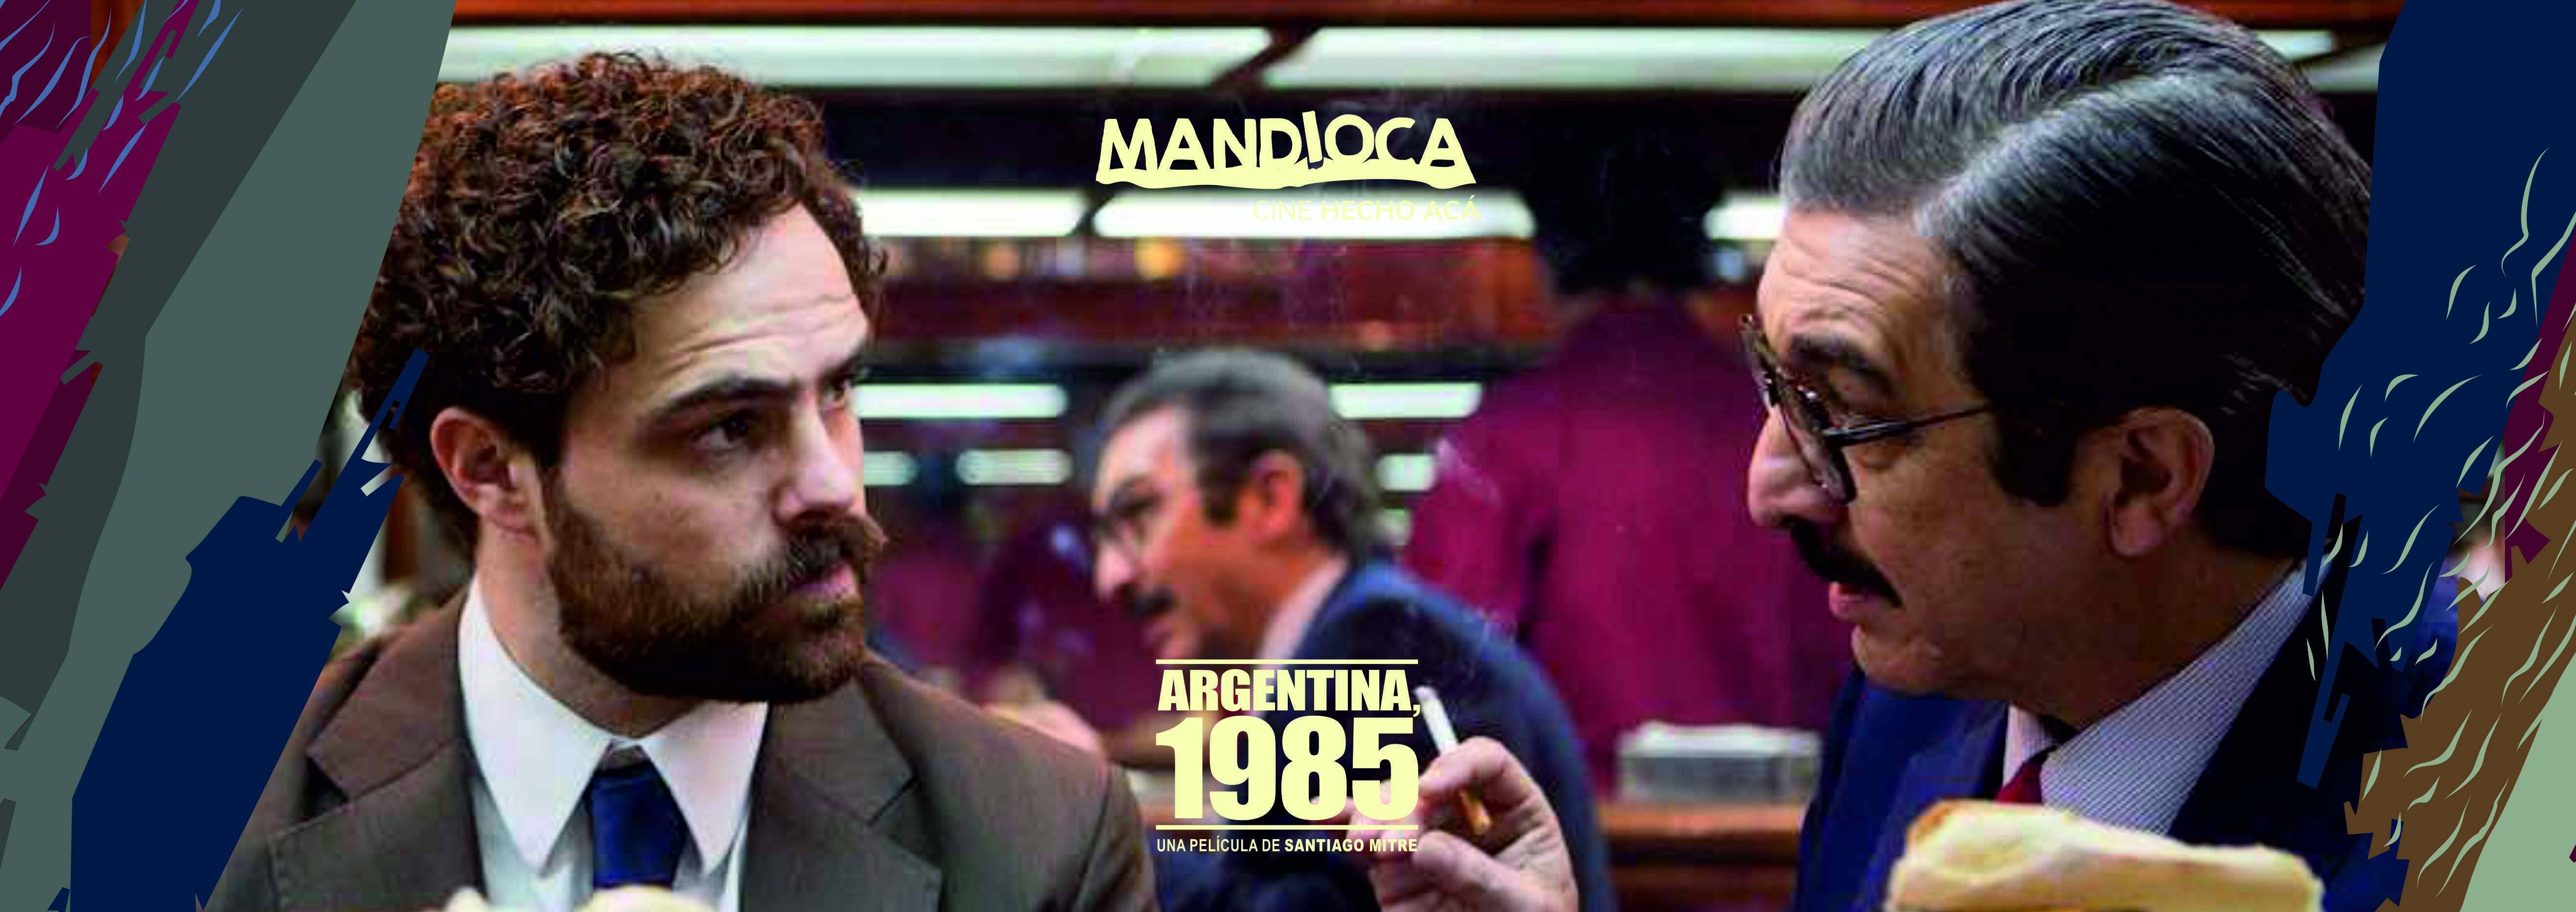 El Ciclo Mandioca regresa este miércoles con “Argentina, 1985” en el IMAX